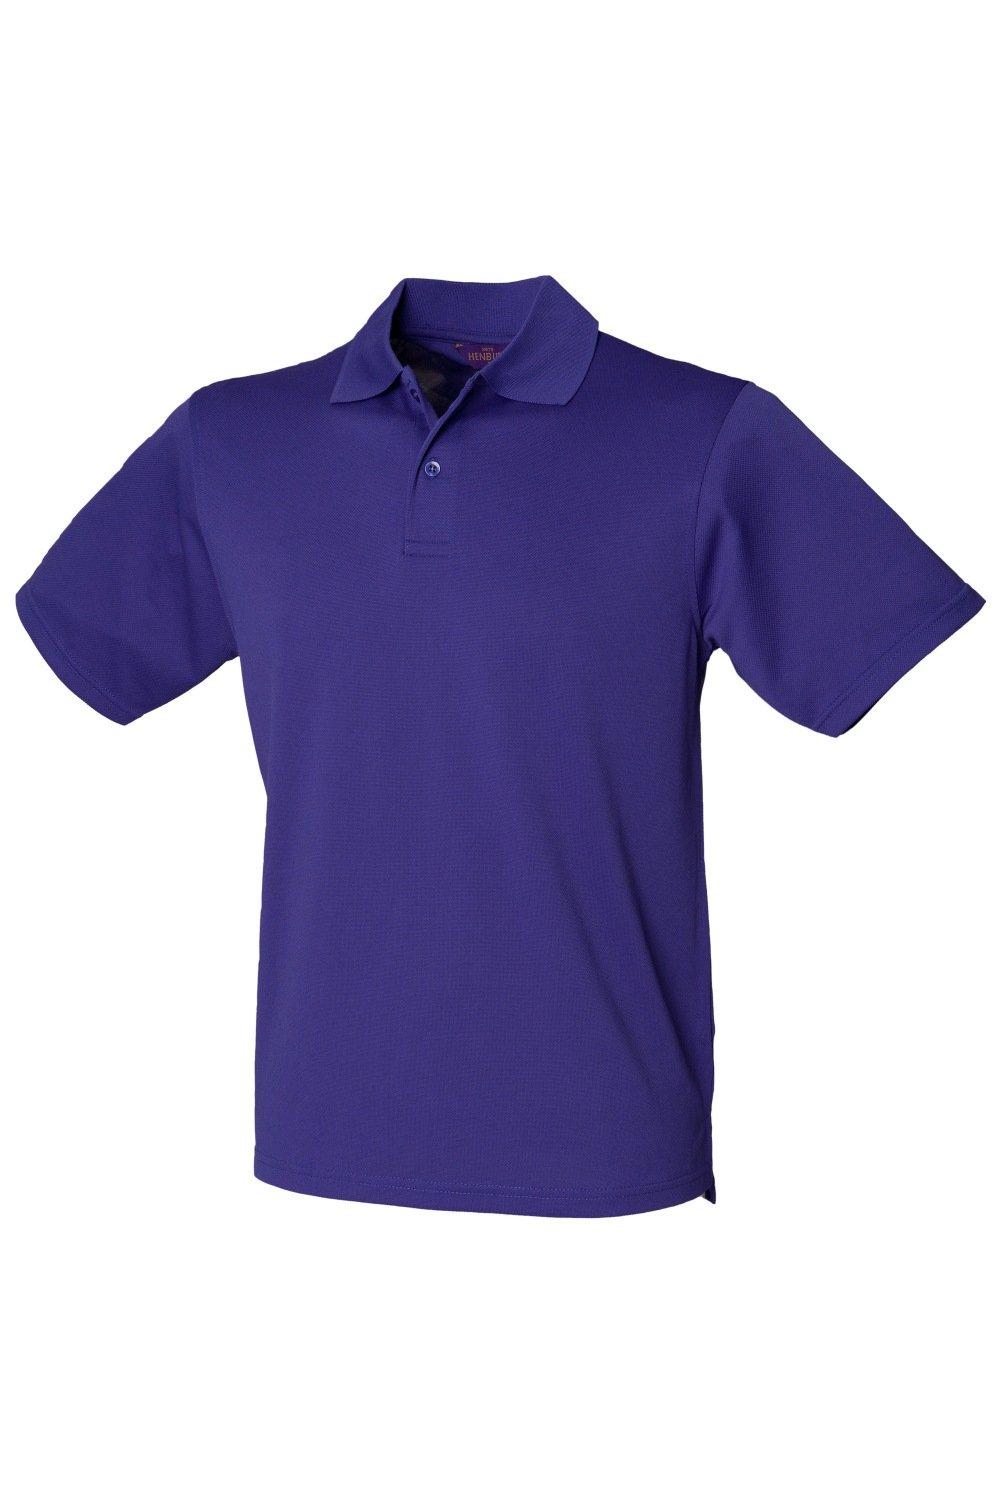 Рубашка поло Coolplus из пике Henbury, фиолетовый рубашка поло coolplus из пике henbury зеленый